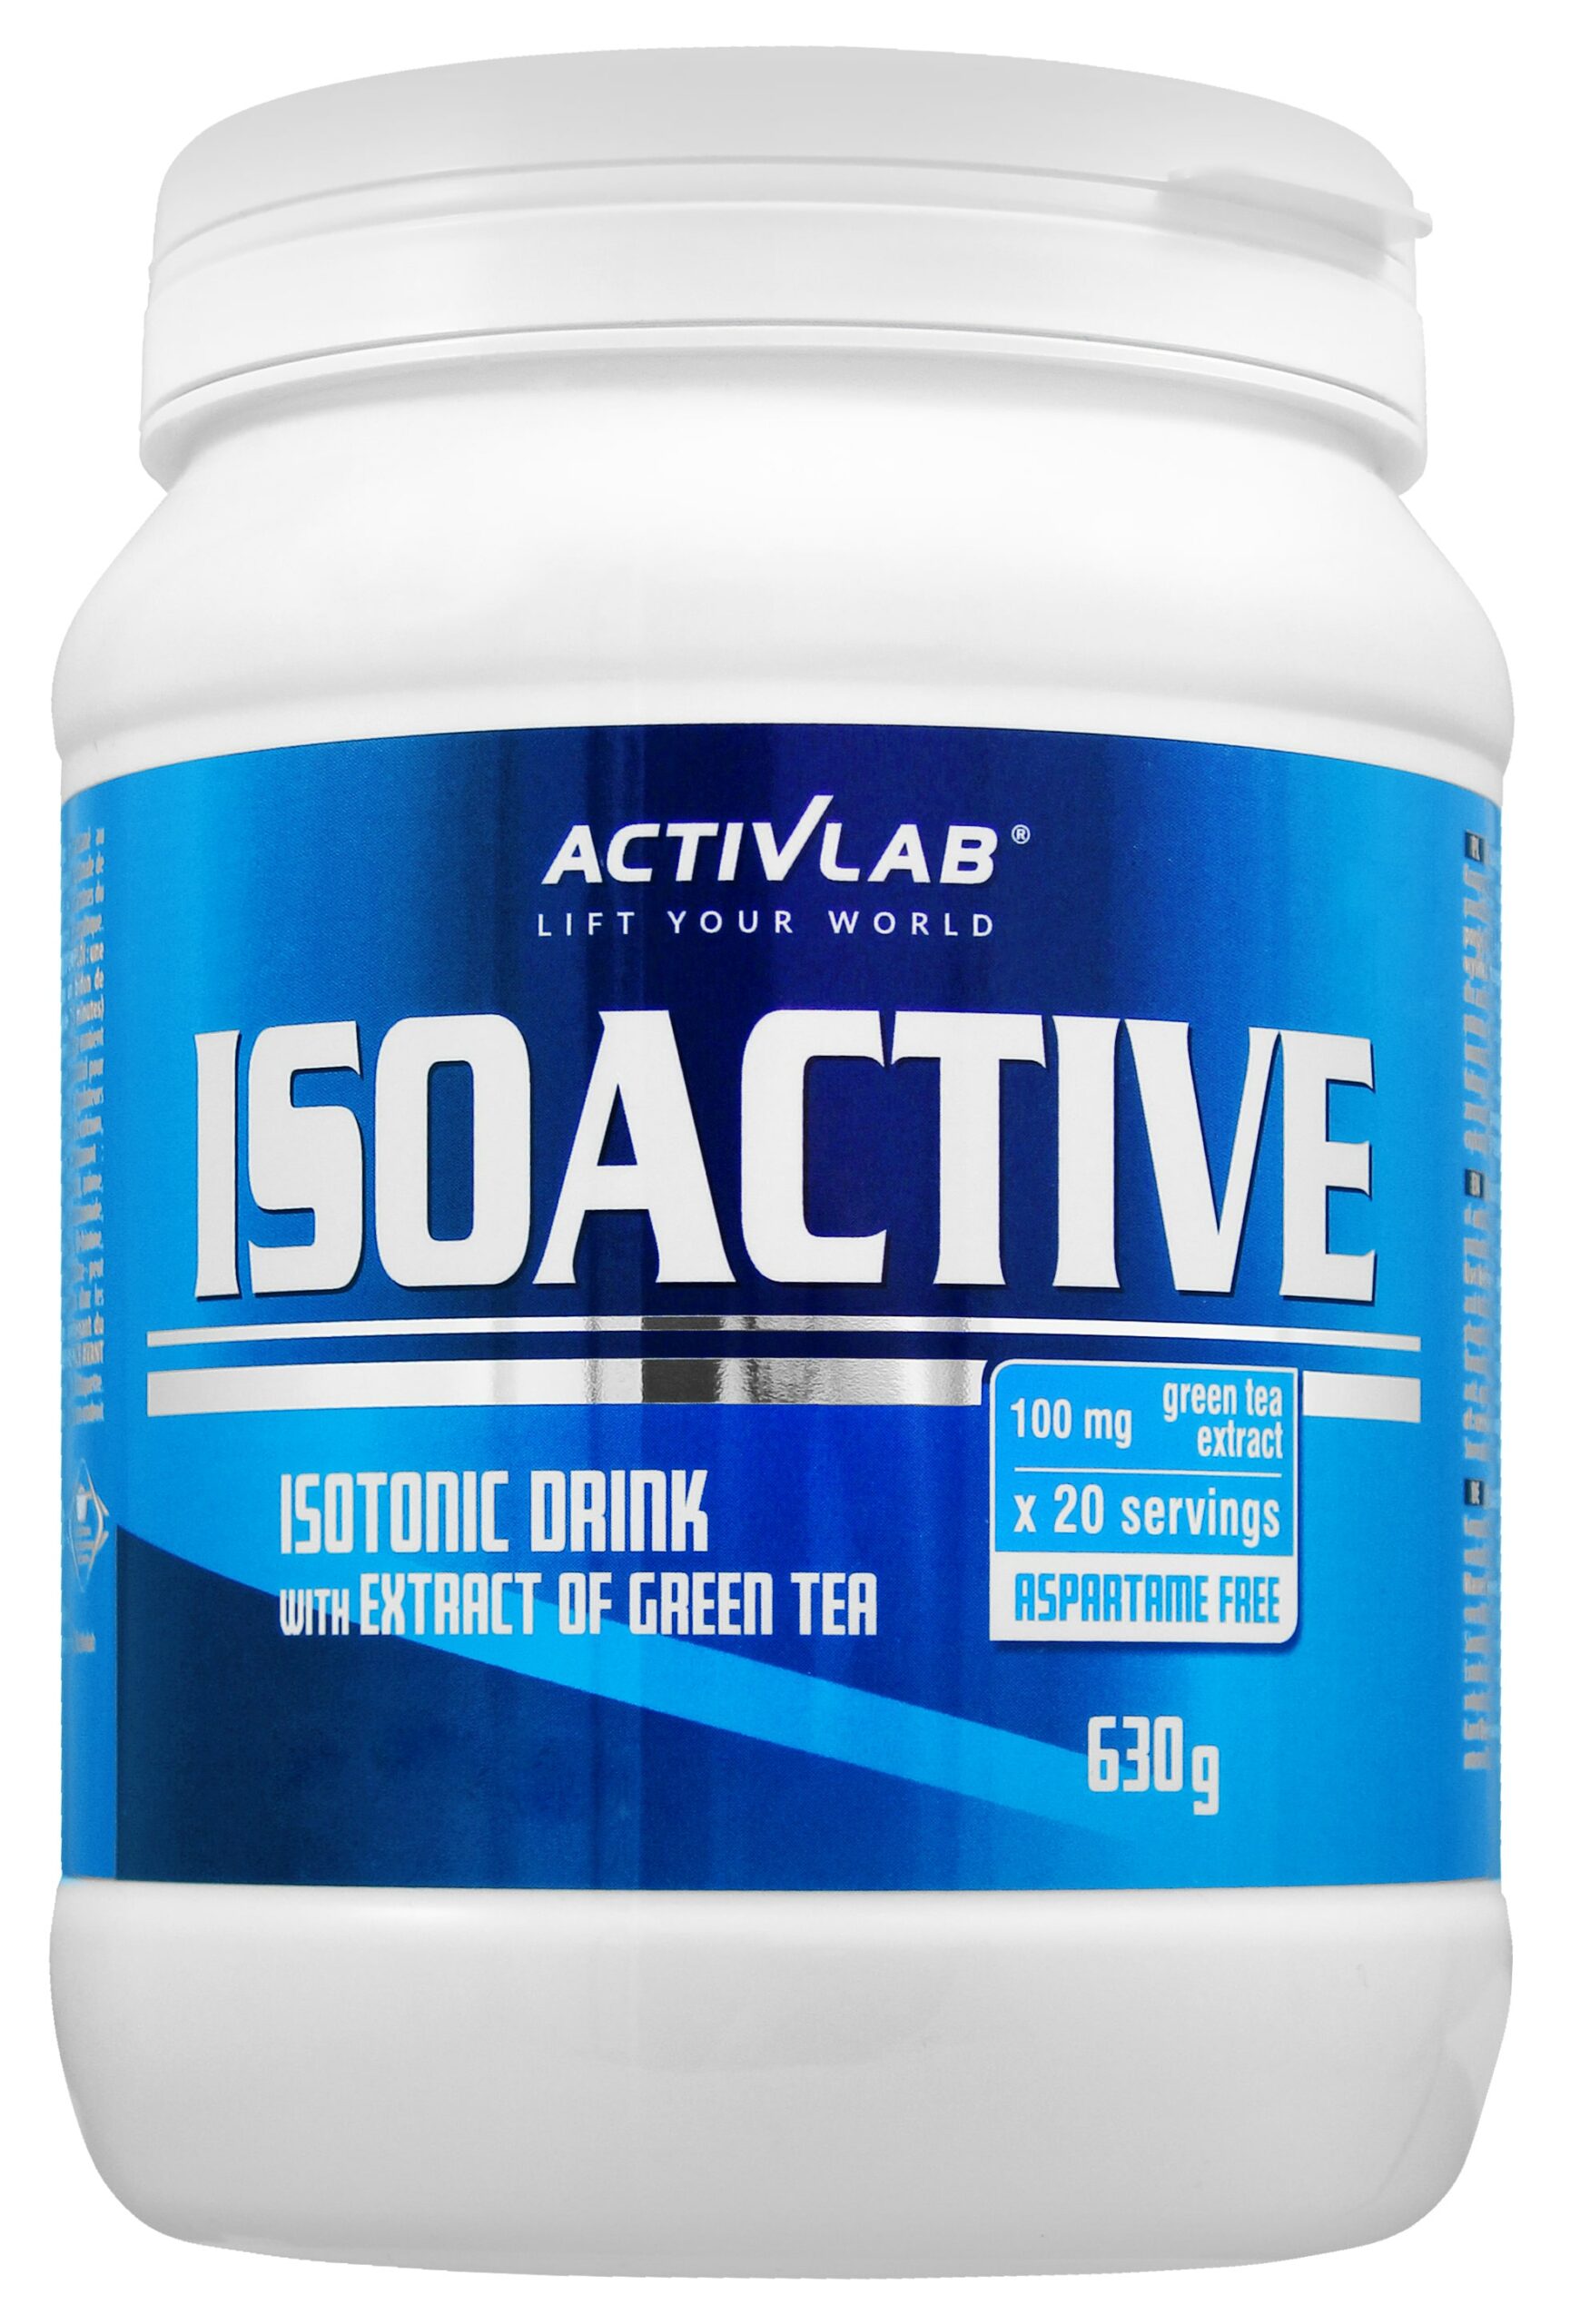 isoactive630g